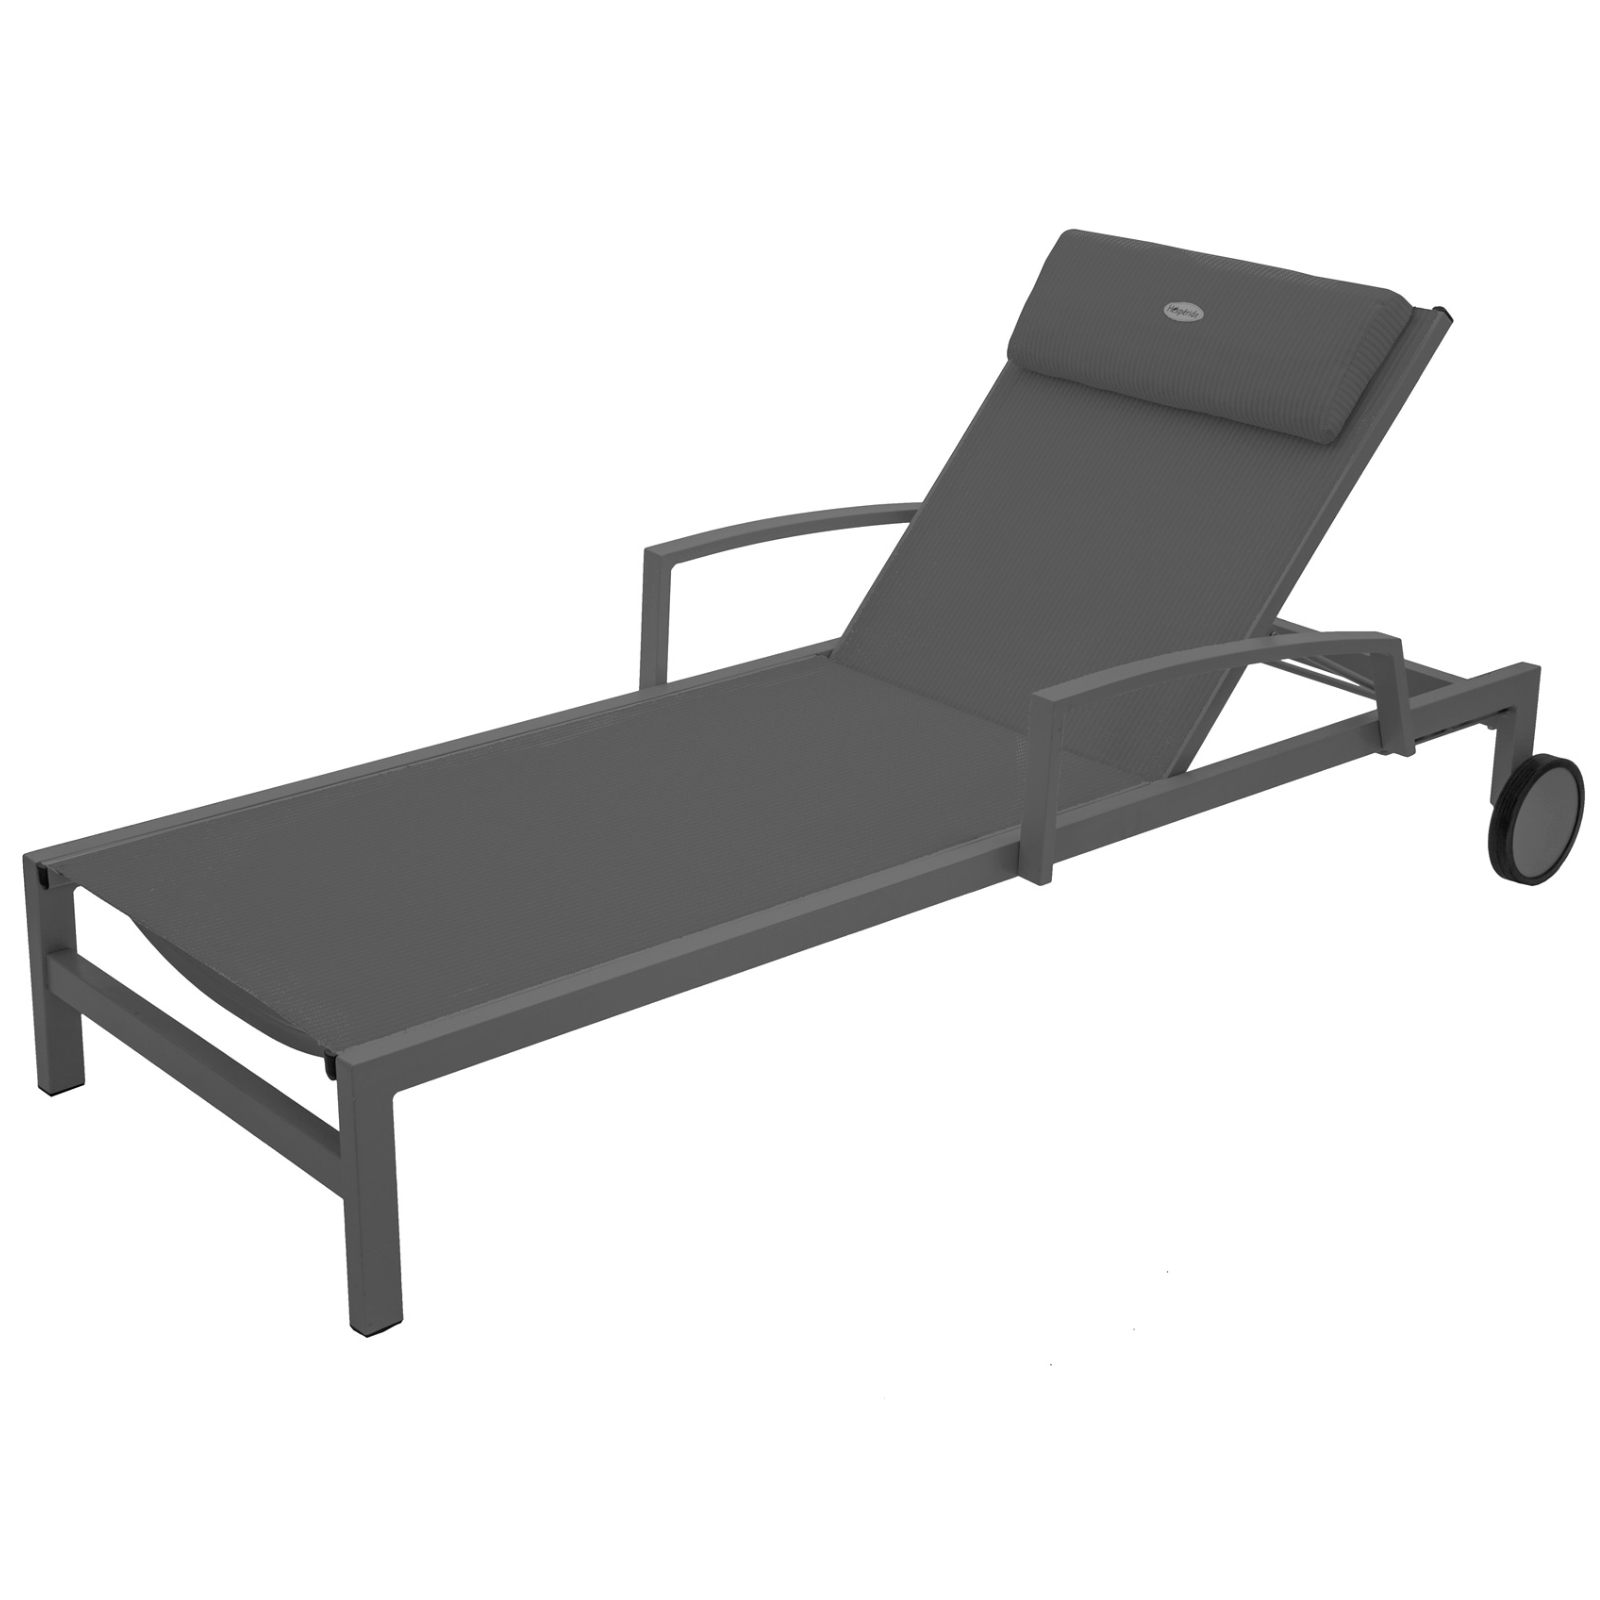 Lettino prendisole "Malibu" antracite reclinabile struttura in alluminio verniciato seduta e schienale in texitilene con ruote